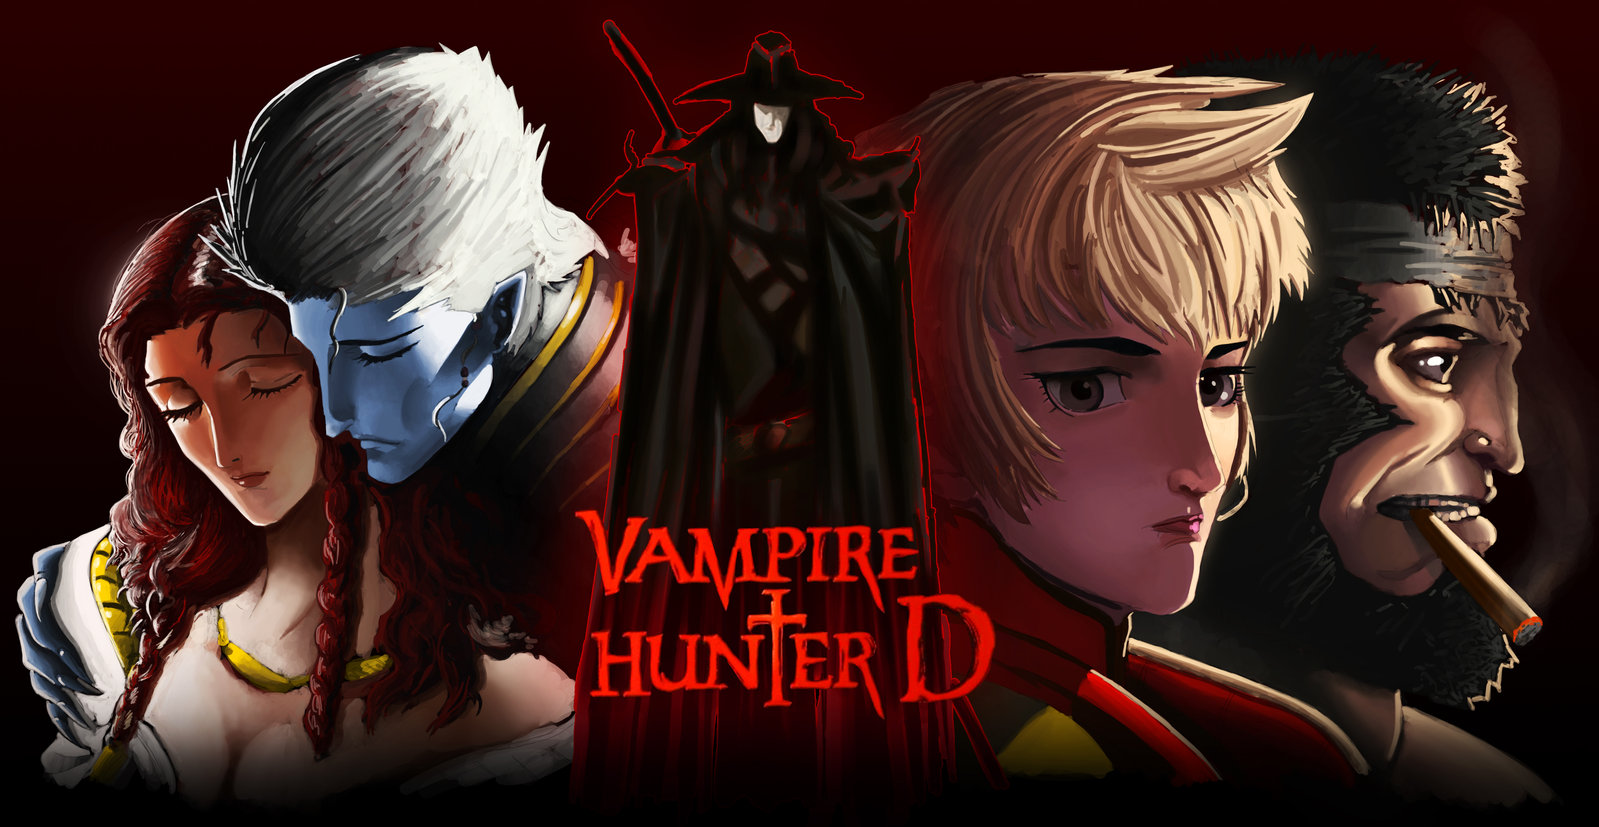 D (Vampire Hunter) 1080P, 2K, 4K, 5K HD wallpapers free download